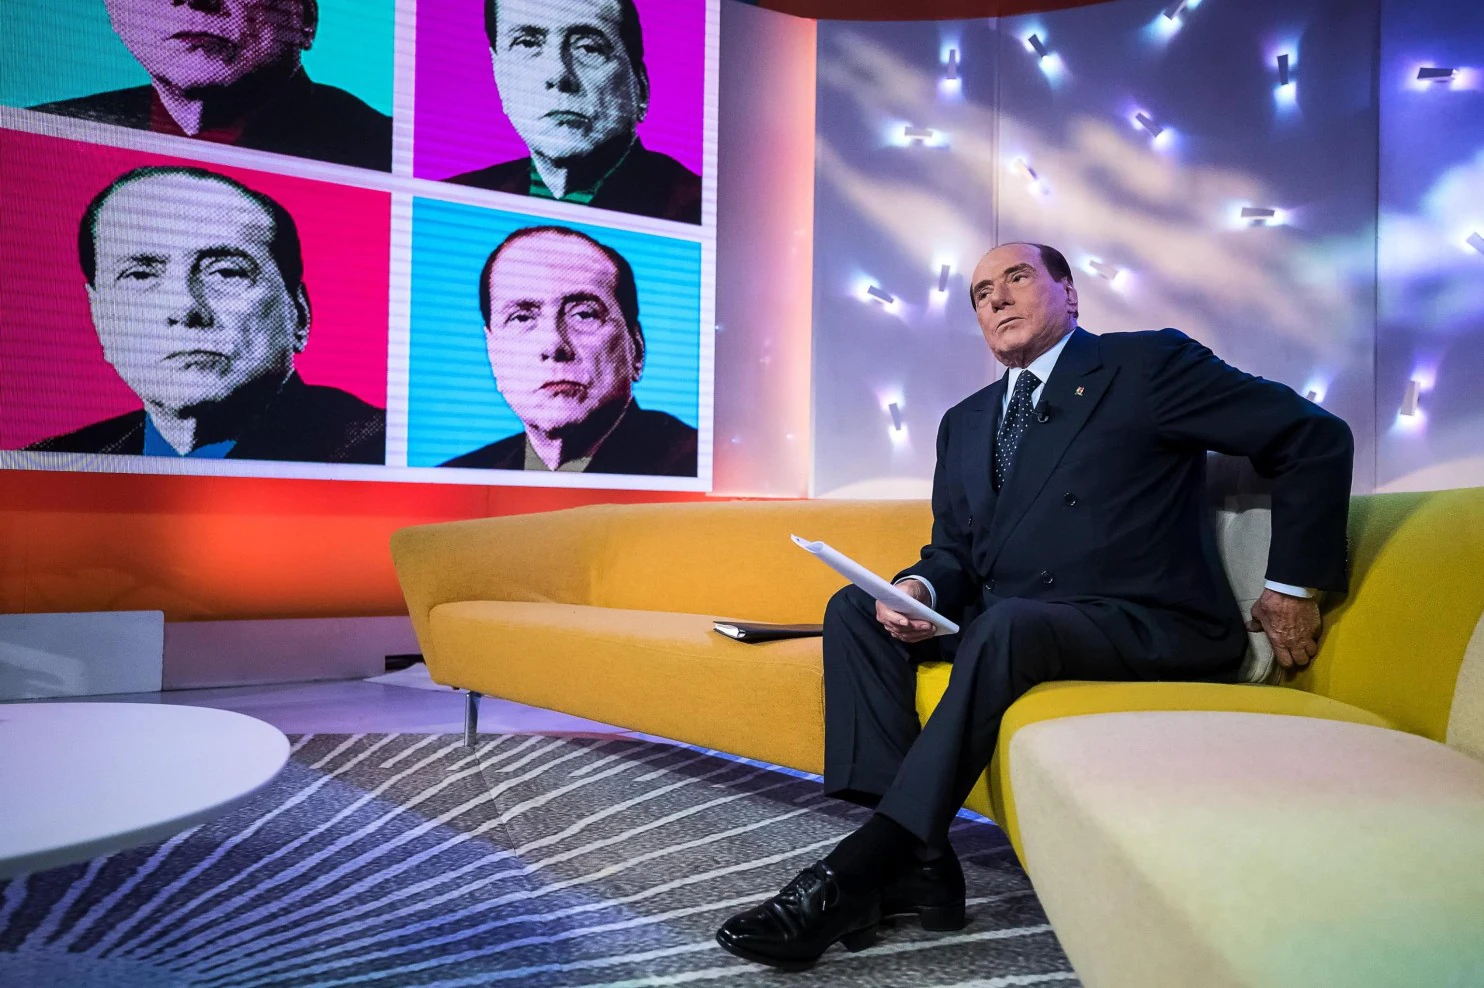 “Naj kdo pove vsevedi Jerajevi, da ima RAI prav tako naročnino in 13.000 zaposlenih. Berlusconi je lastnik največjih TV hiš in kljub temu niso strankarska trobila, temveč poročajo pošteno in objektivno”- Marko Bandelli v polemiki z Alenko Jeraj zaradi predloga o ukinitvi naročnine